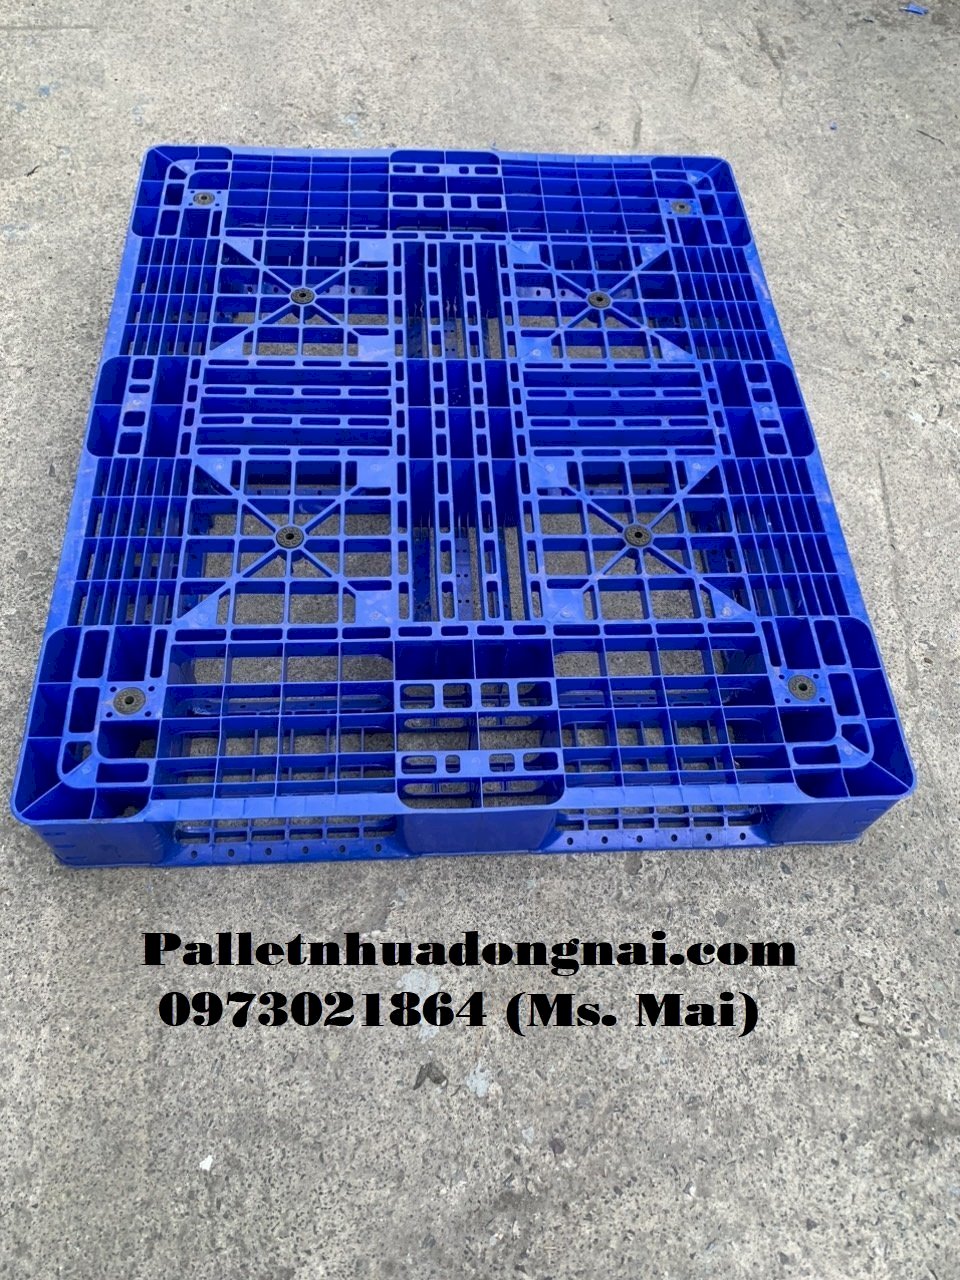 Pallet nhựa cũ giá rẻ Tây Ninh, liên hệ 0973021864 (24/7)